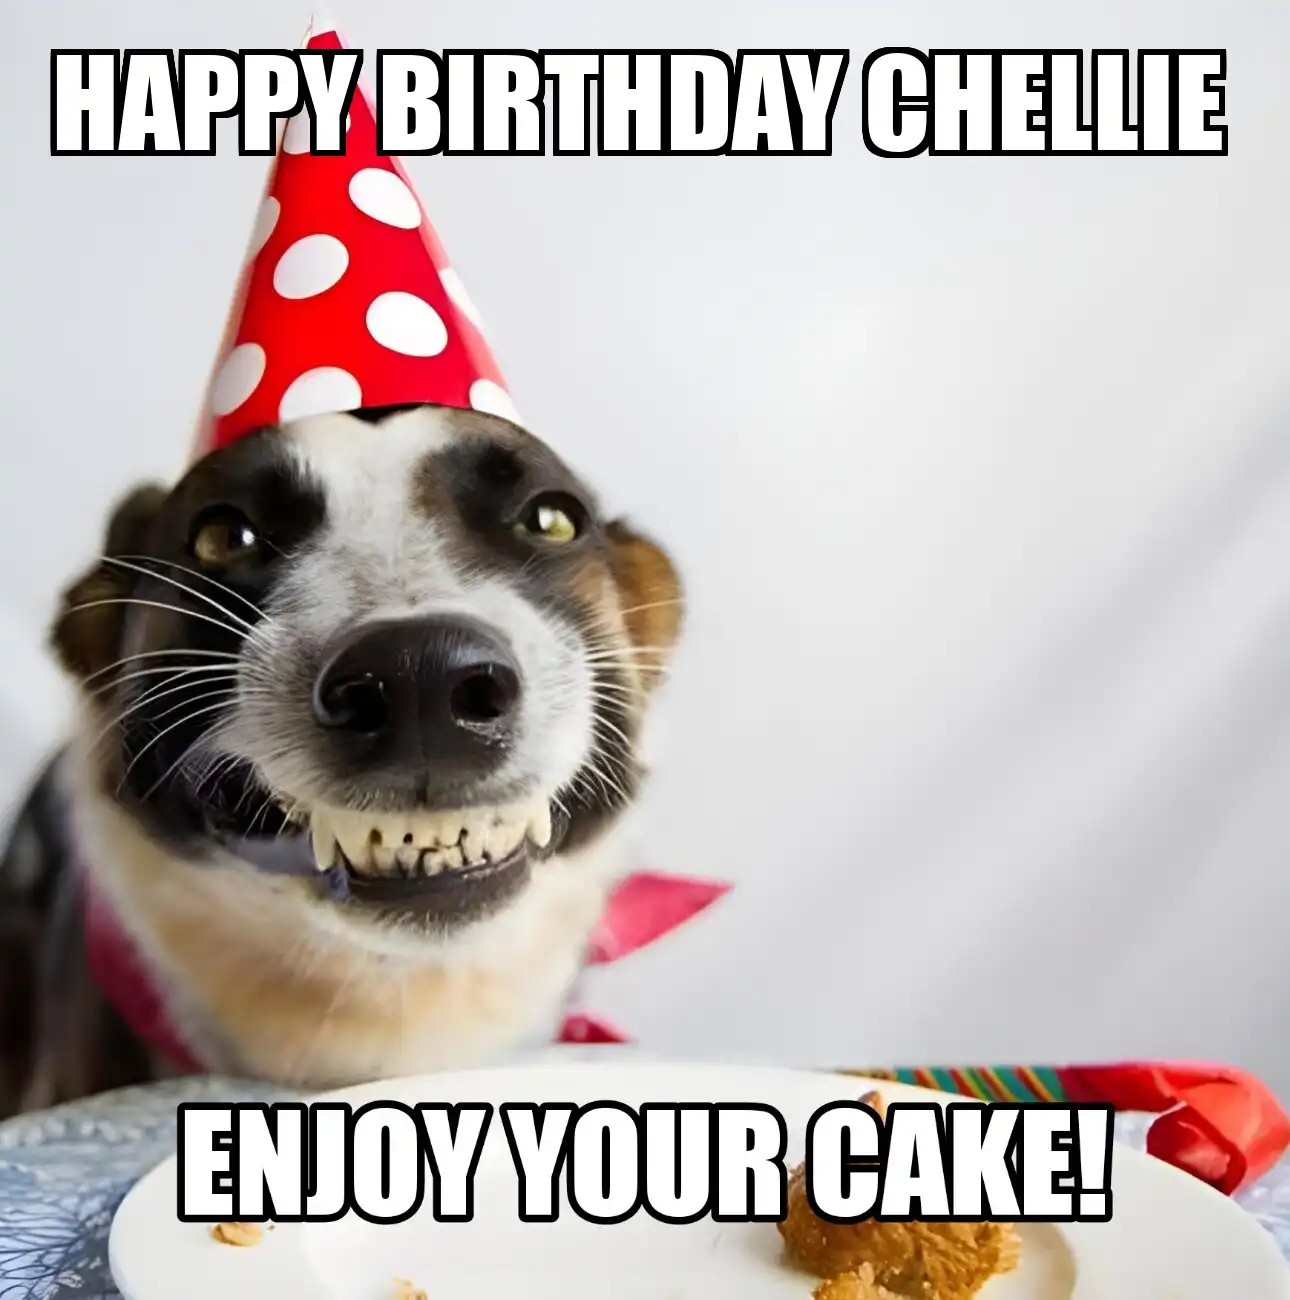 Happy Birthday Chellie Enjoy Your Cake Dog Meme